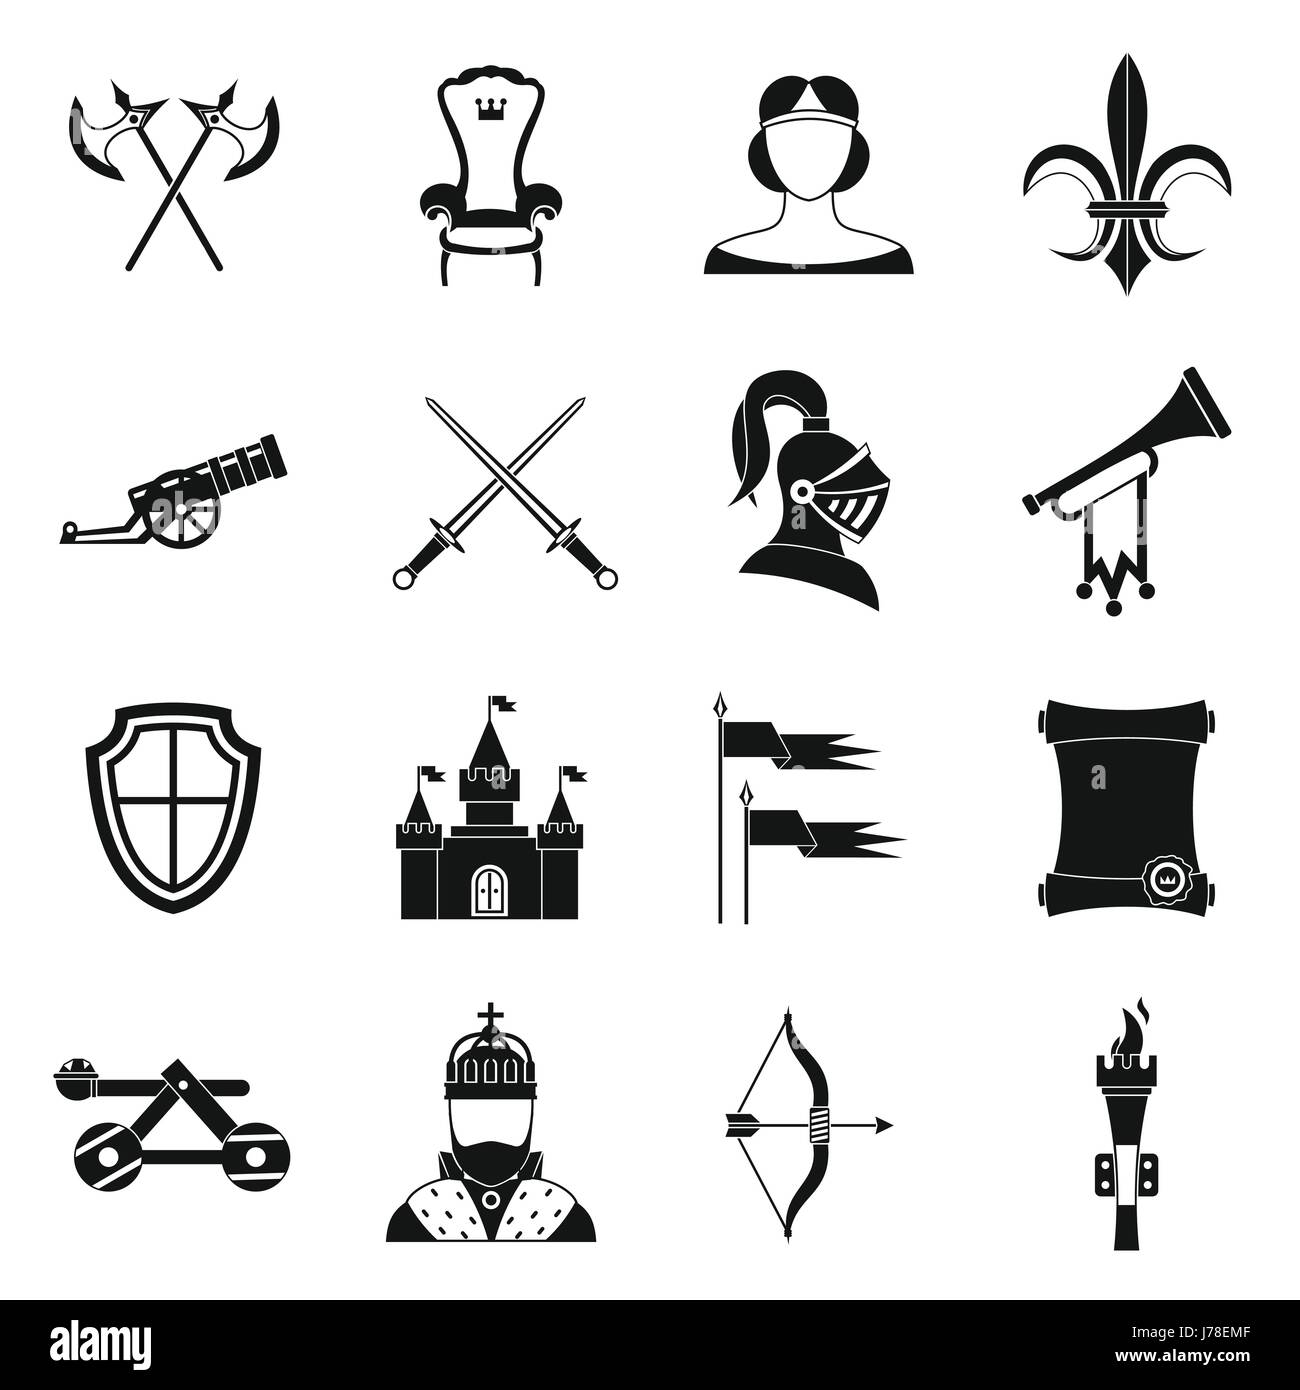 Ritter mittelalterliche Ikonen in einfachem Stil gesetzt. Mittelalter Krieger Waffen set Sammlung Vektor-illustration Stock Vektor